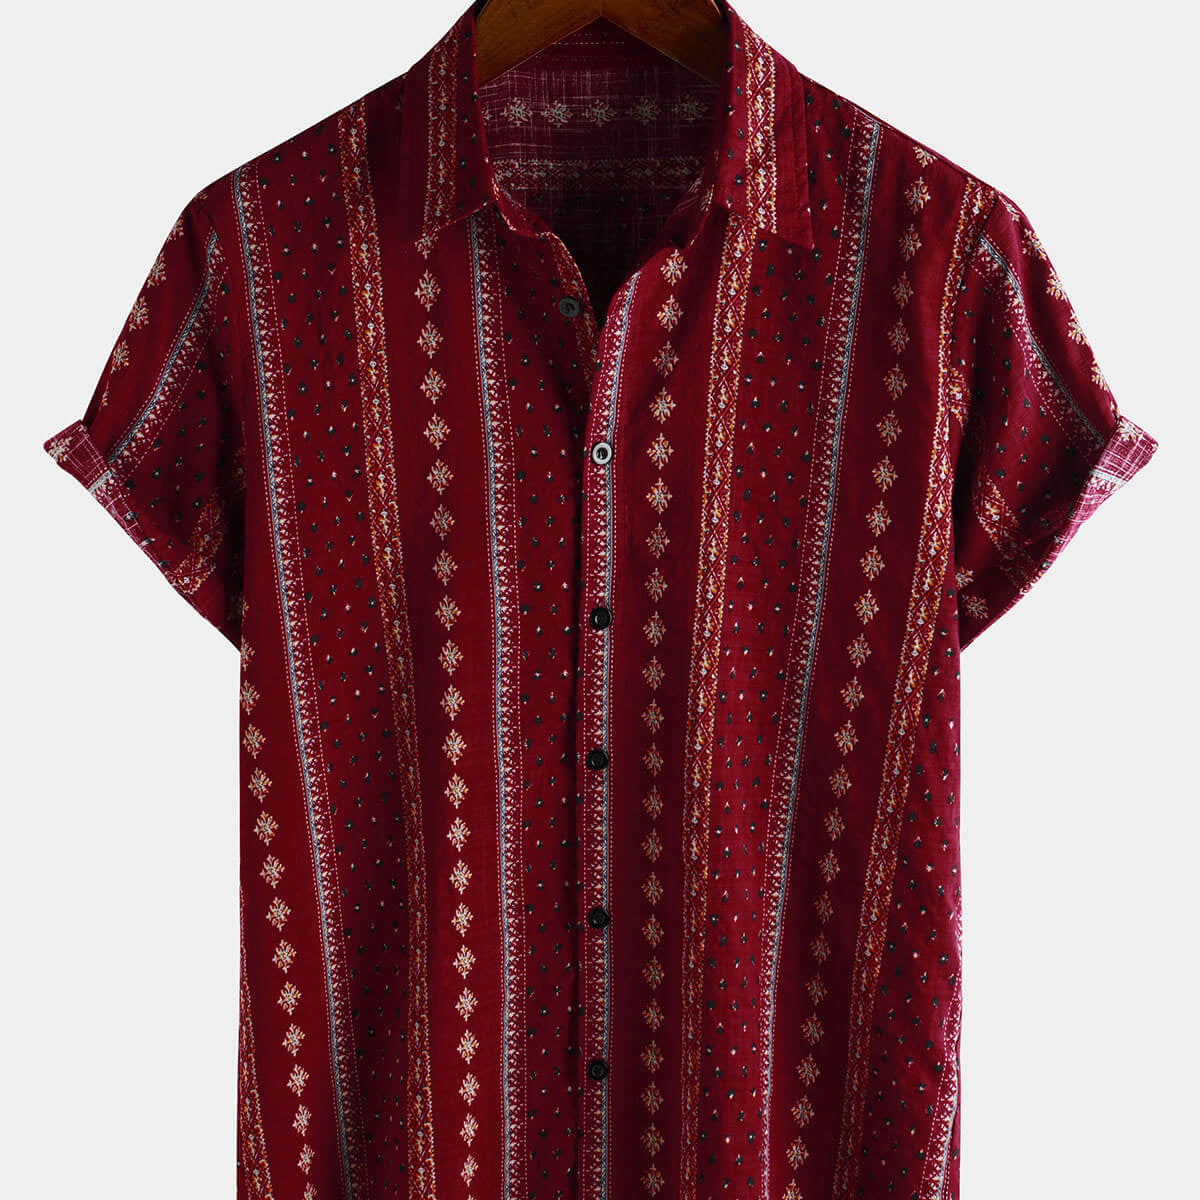 Chemise rétro à manches courtes pour hommes, imprimé rayé rouge, boutonnée, vintage des années 70